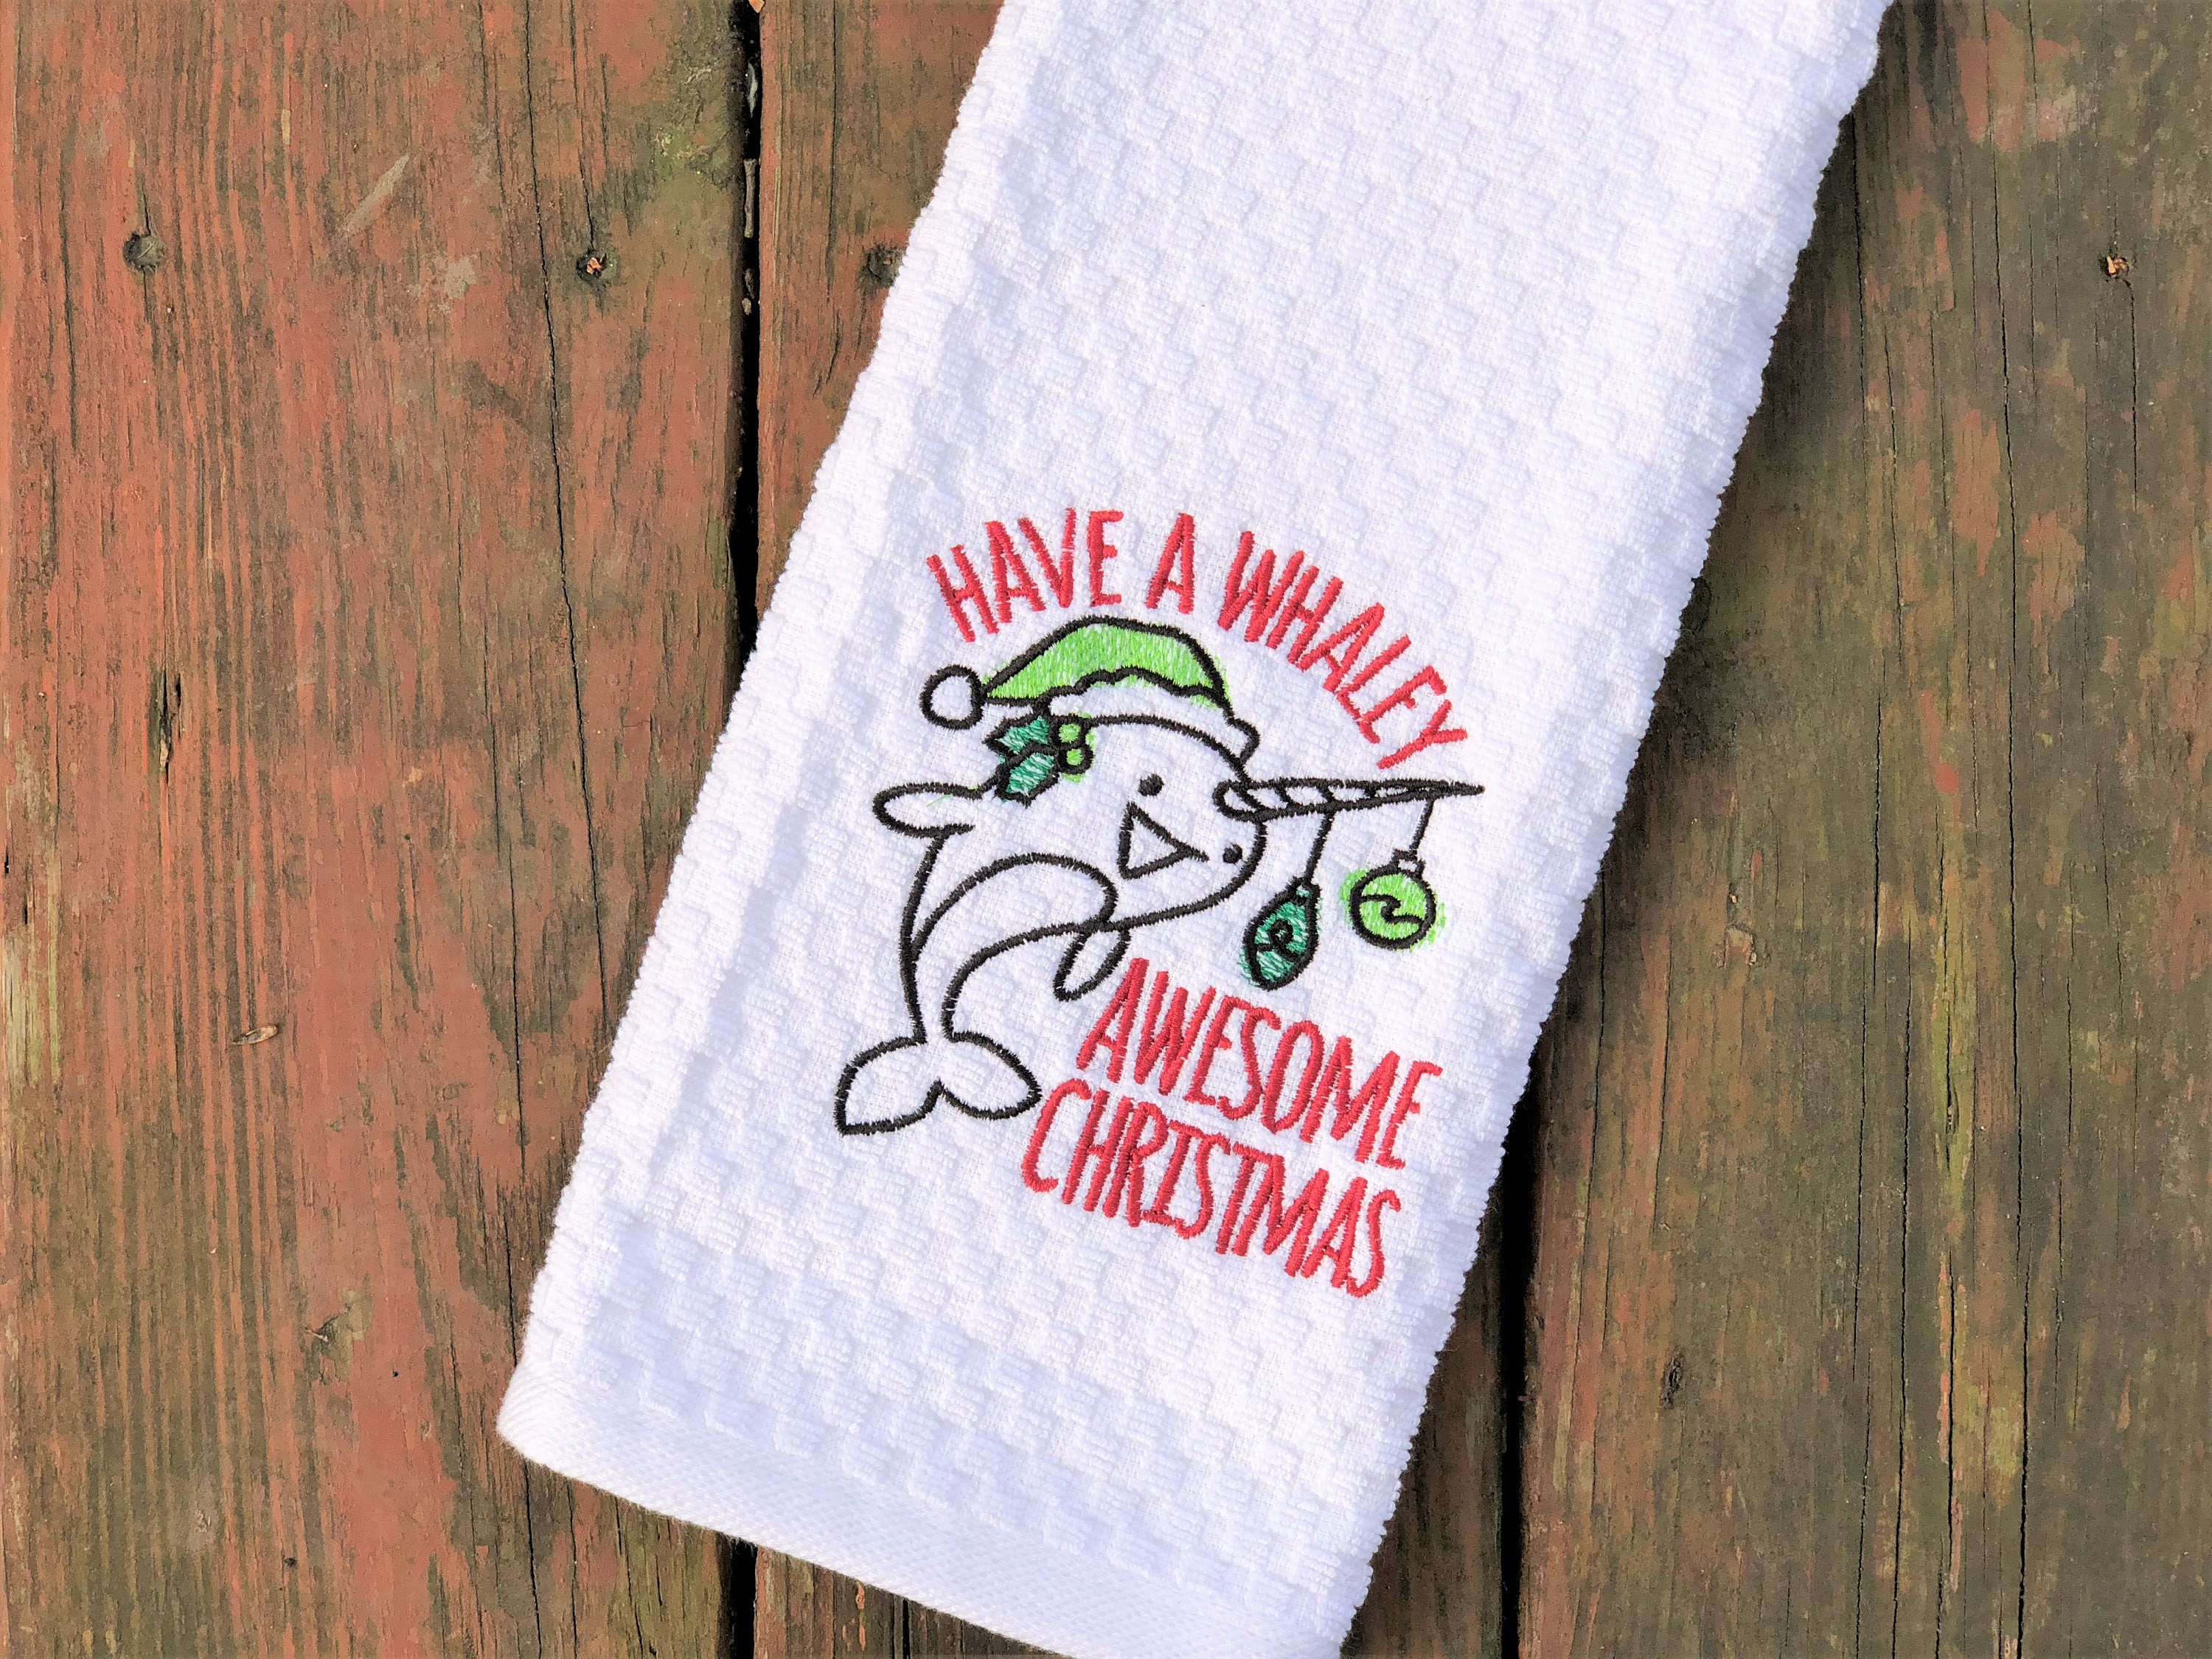 Narwhal Towel Christmas Towel Have a Whaley Awesome Christmas Funny Towel  Pun Kitchen Towel Christmas Gift Christmas Decor 